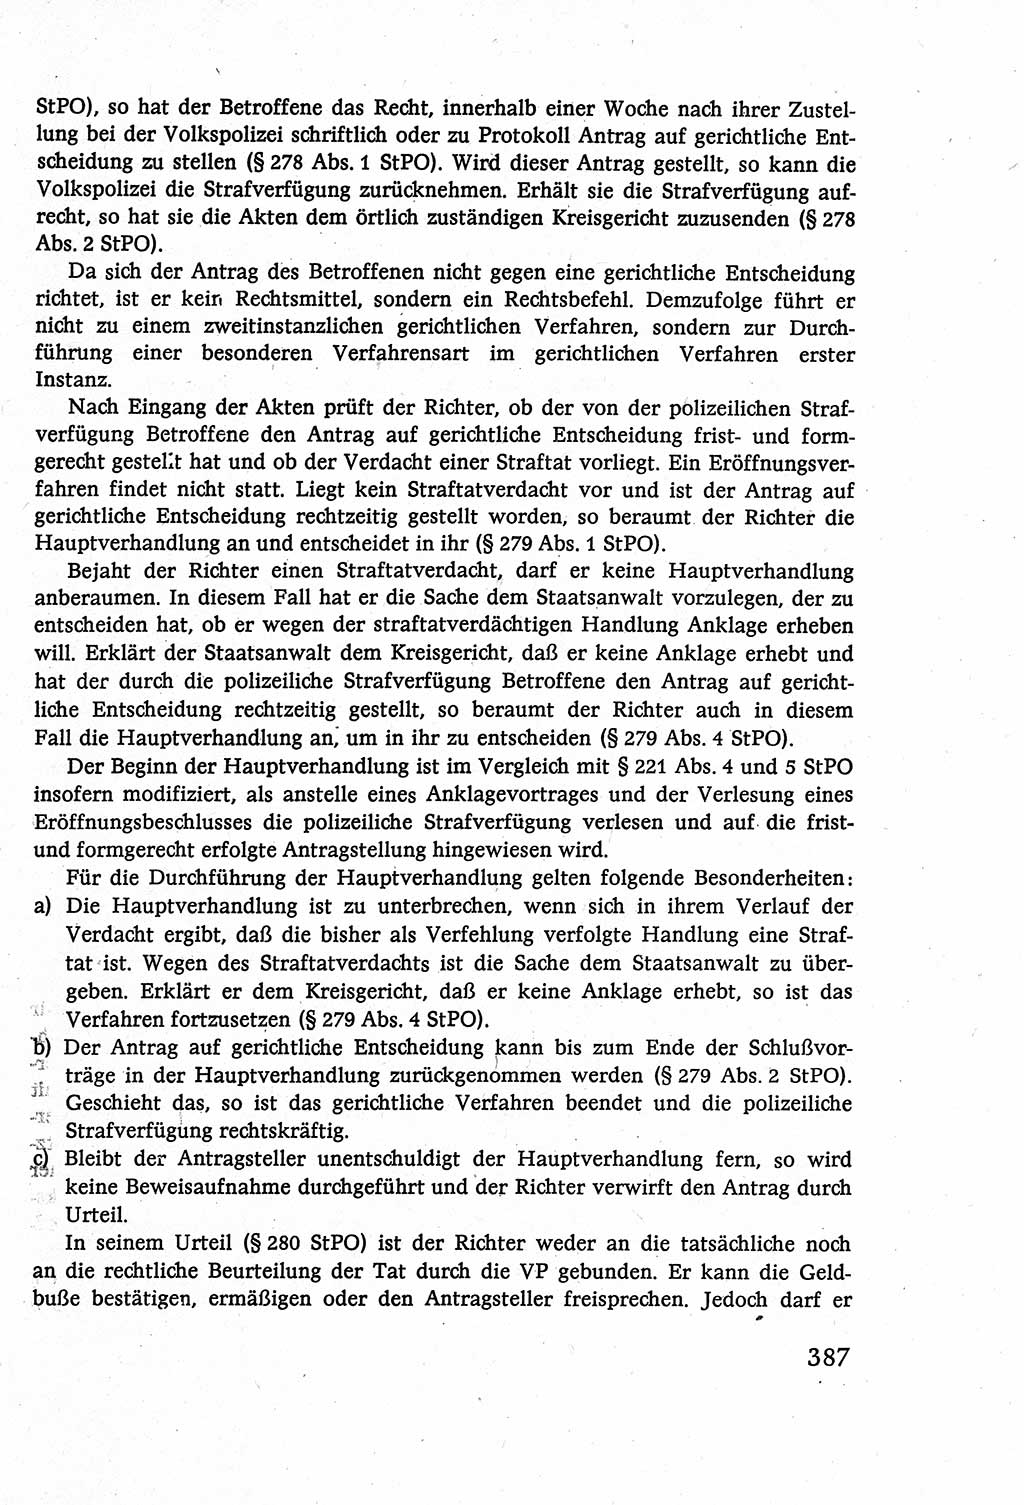 Strafverfahrensrecht [Deutsche Demokratische Republik (DDR)], Lehrbuch 1977, Seite 387 (Strafverf.-R. DDR Lb. 1977, S. 387)